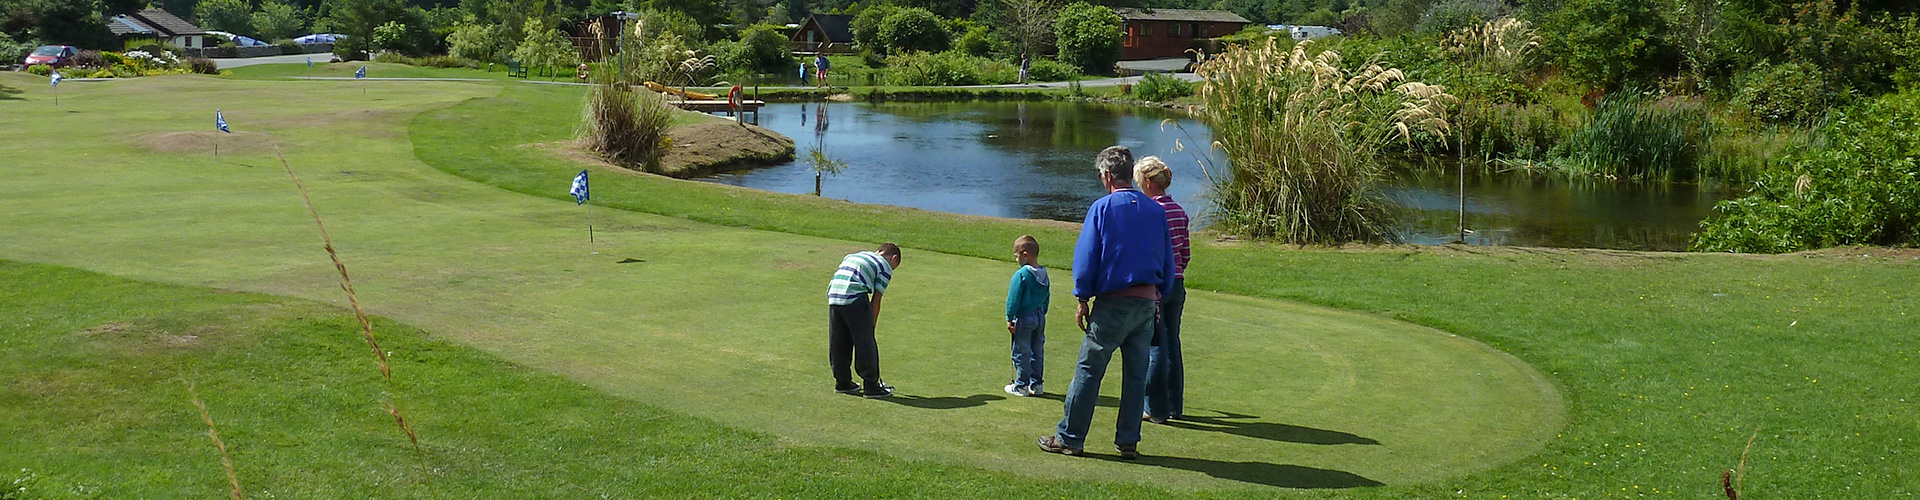 Mini golf at Brighouse Bay Holiday Park